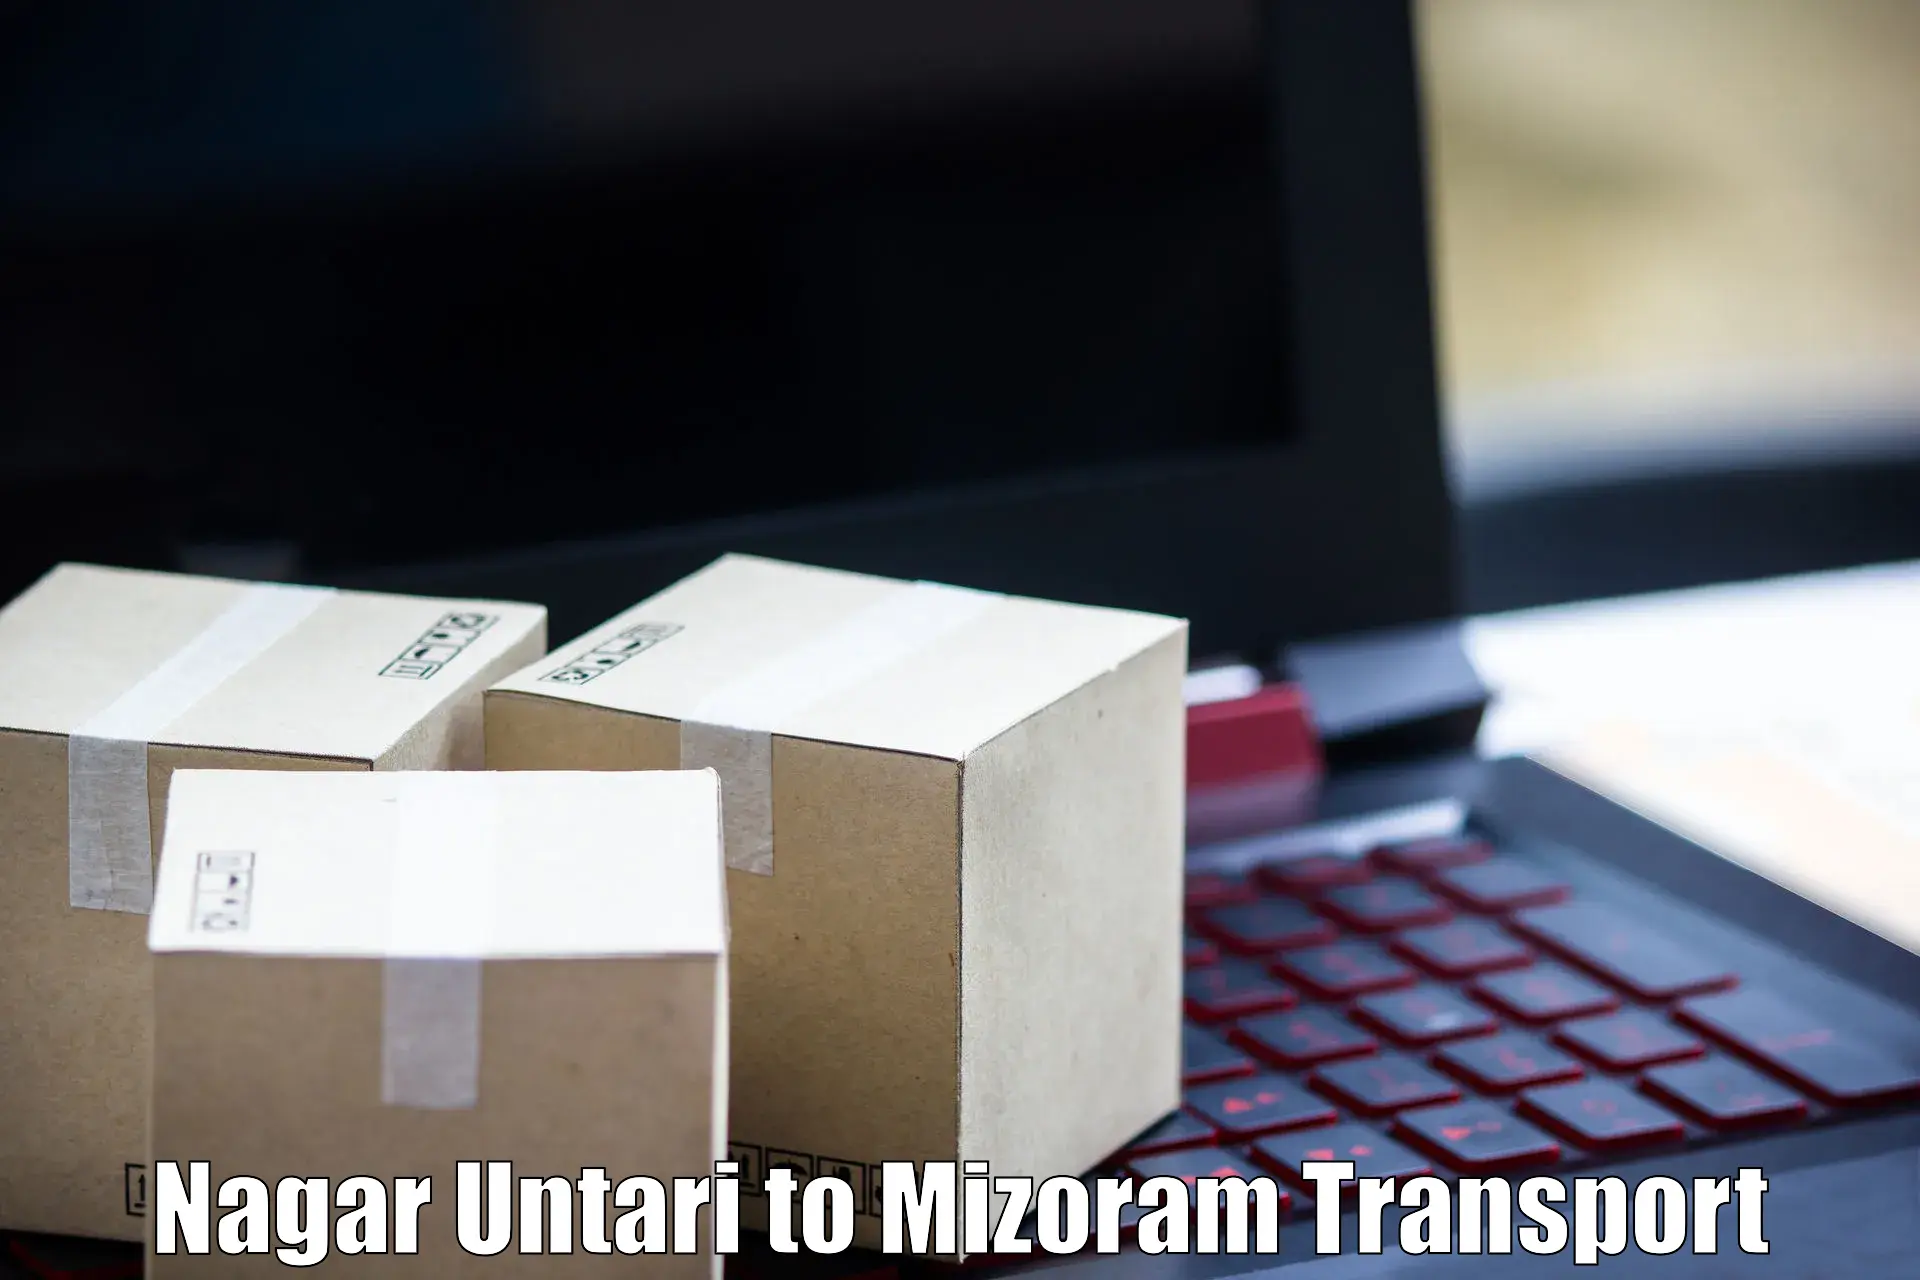 Express transport services Nagar Untari to Mizoram